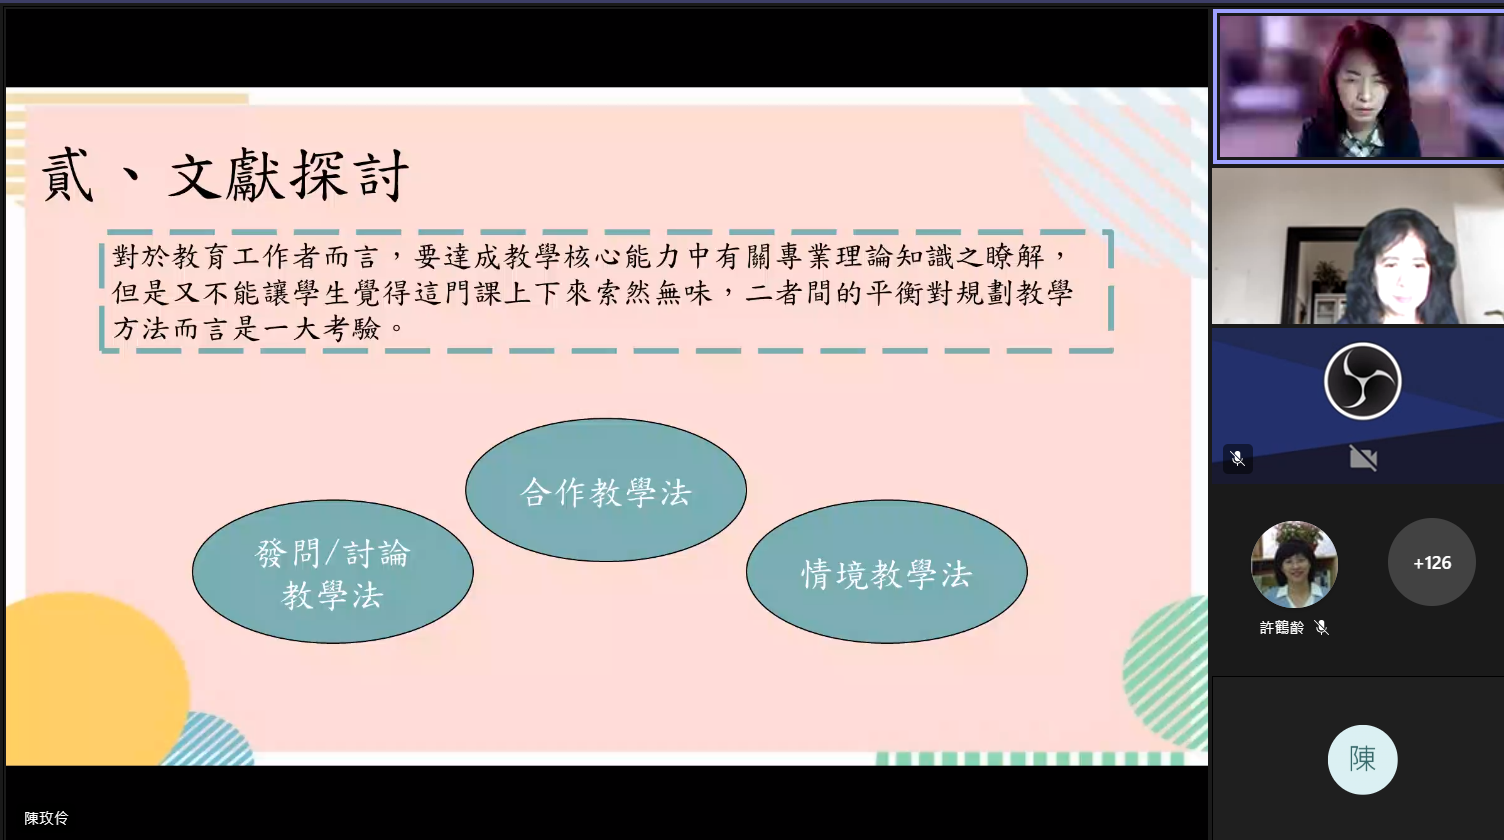 朝陽科技大學社會工作系陳玫伶教授發表〈啟發課堂學習動機提昇自學力〉